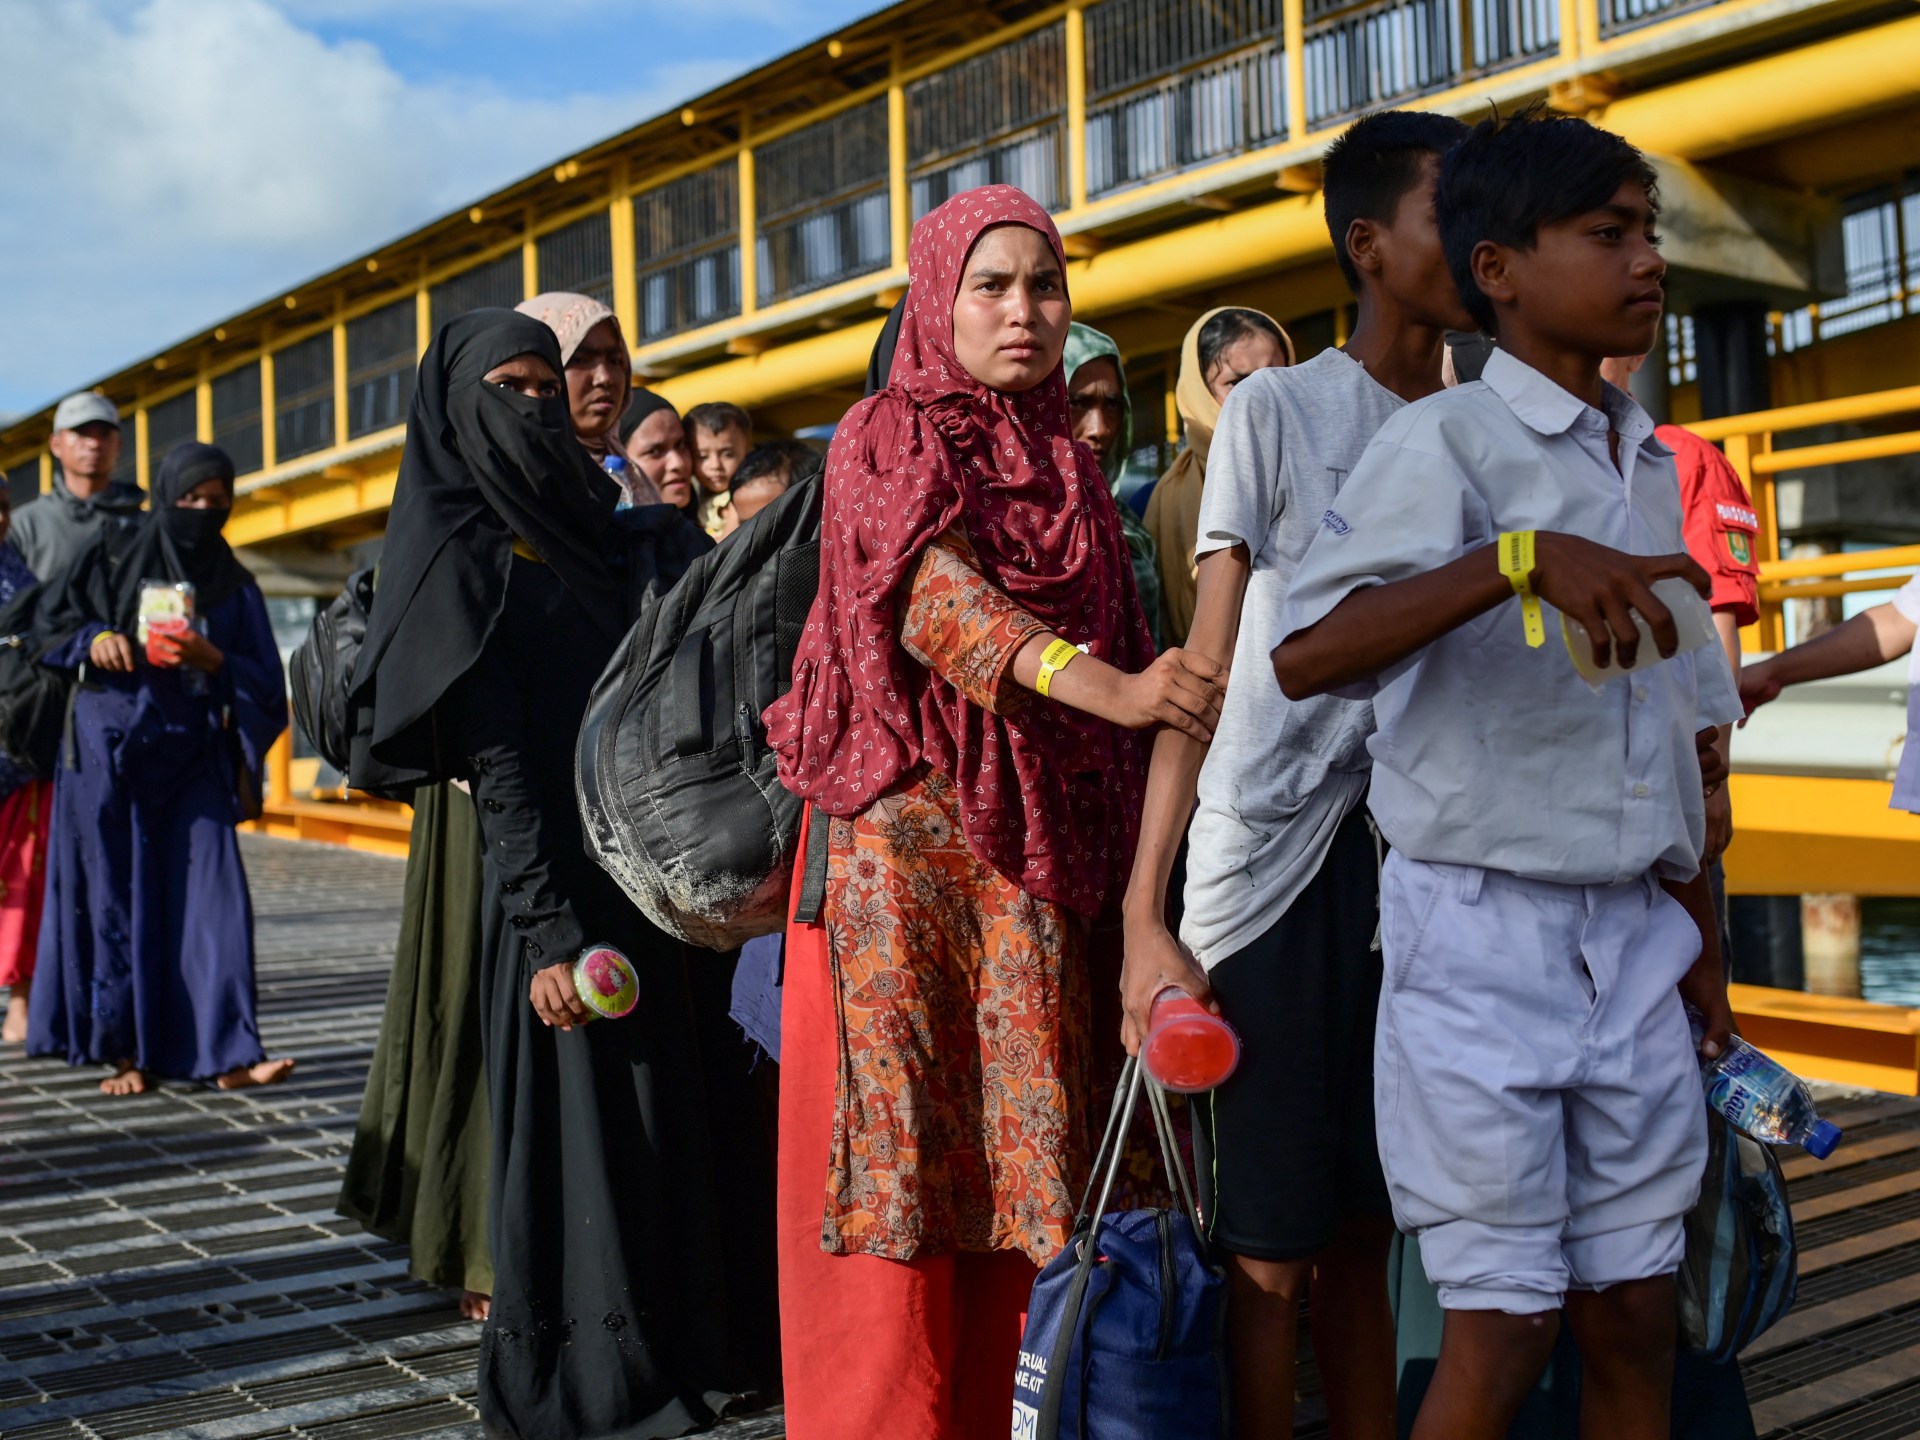 وصول 170 من الروهينغا إلى إندونيسيا هربا من ميانمار | أخبار – البوكس نيوز